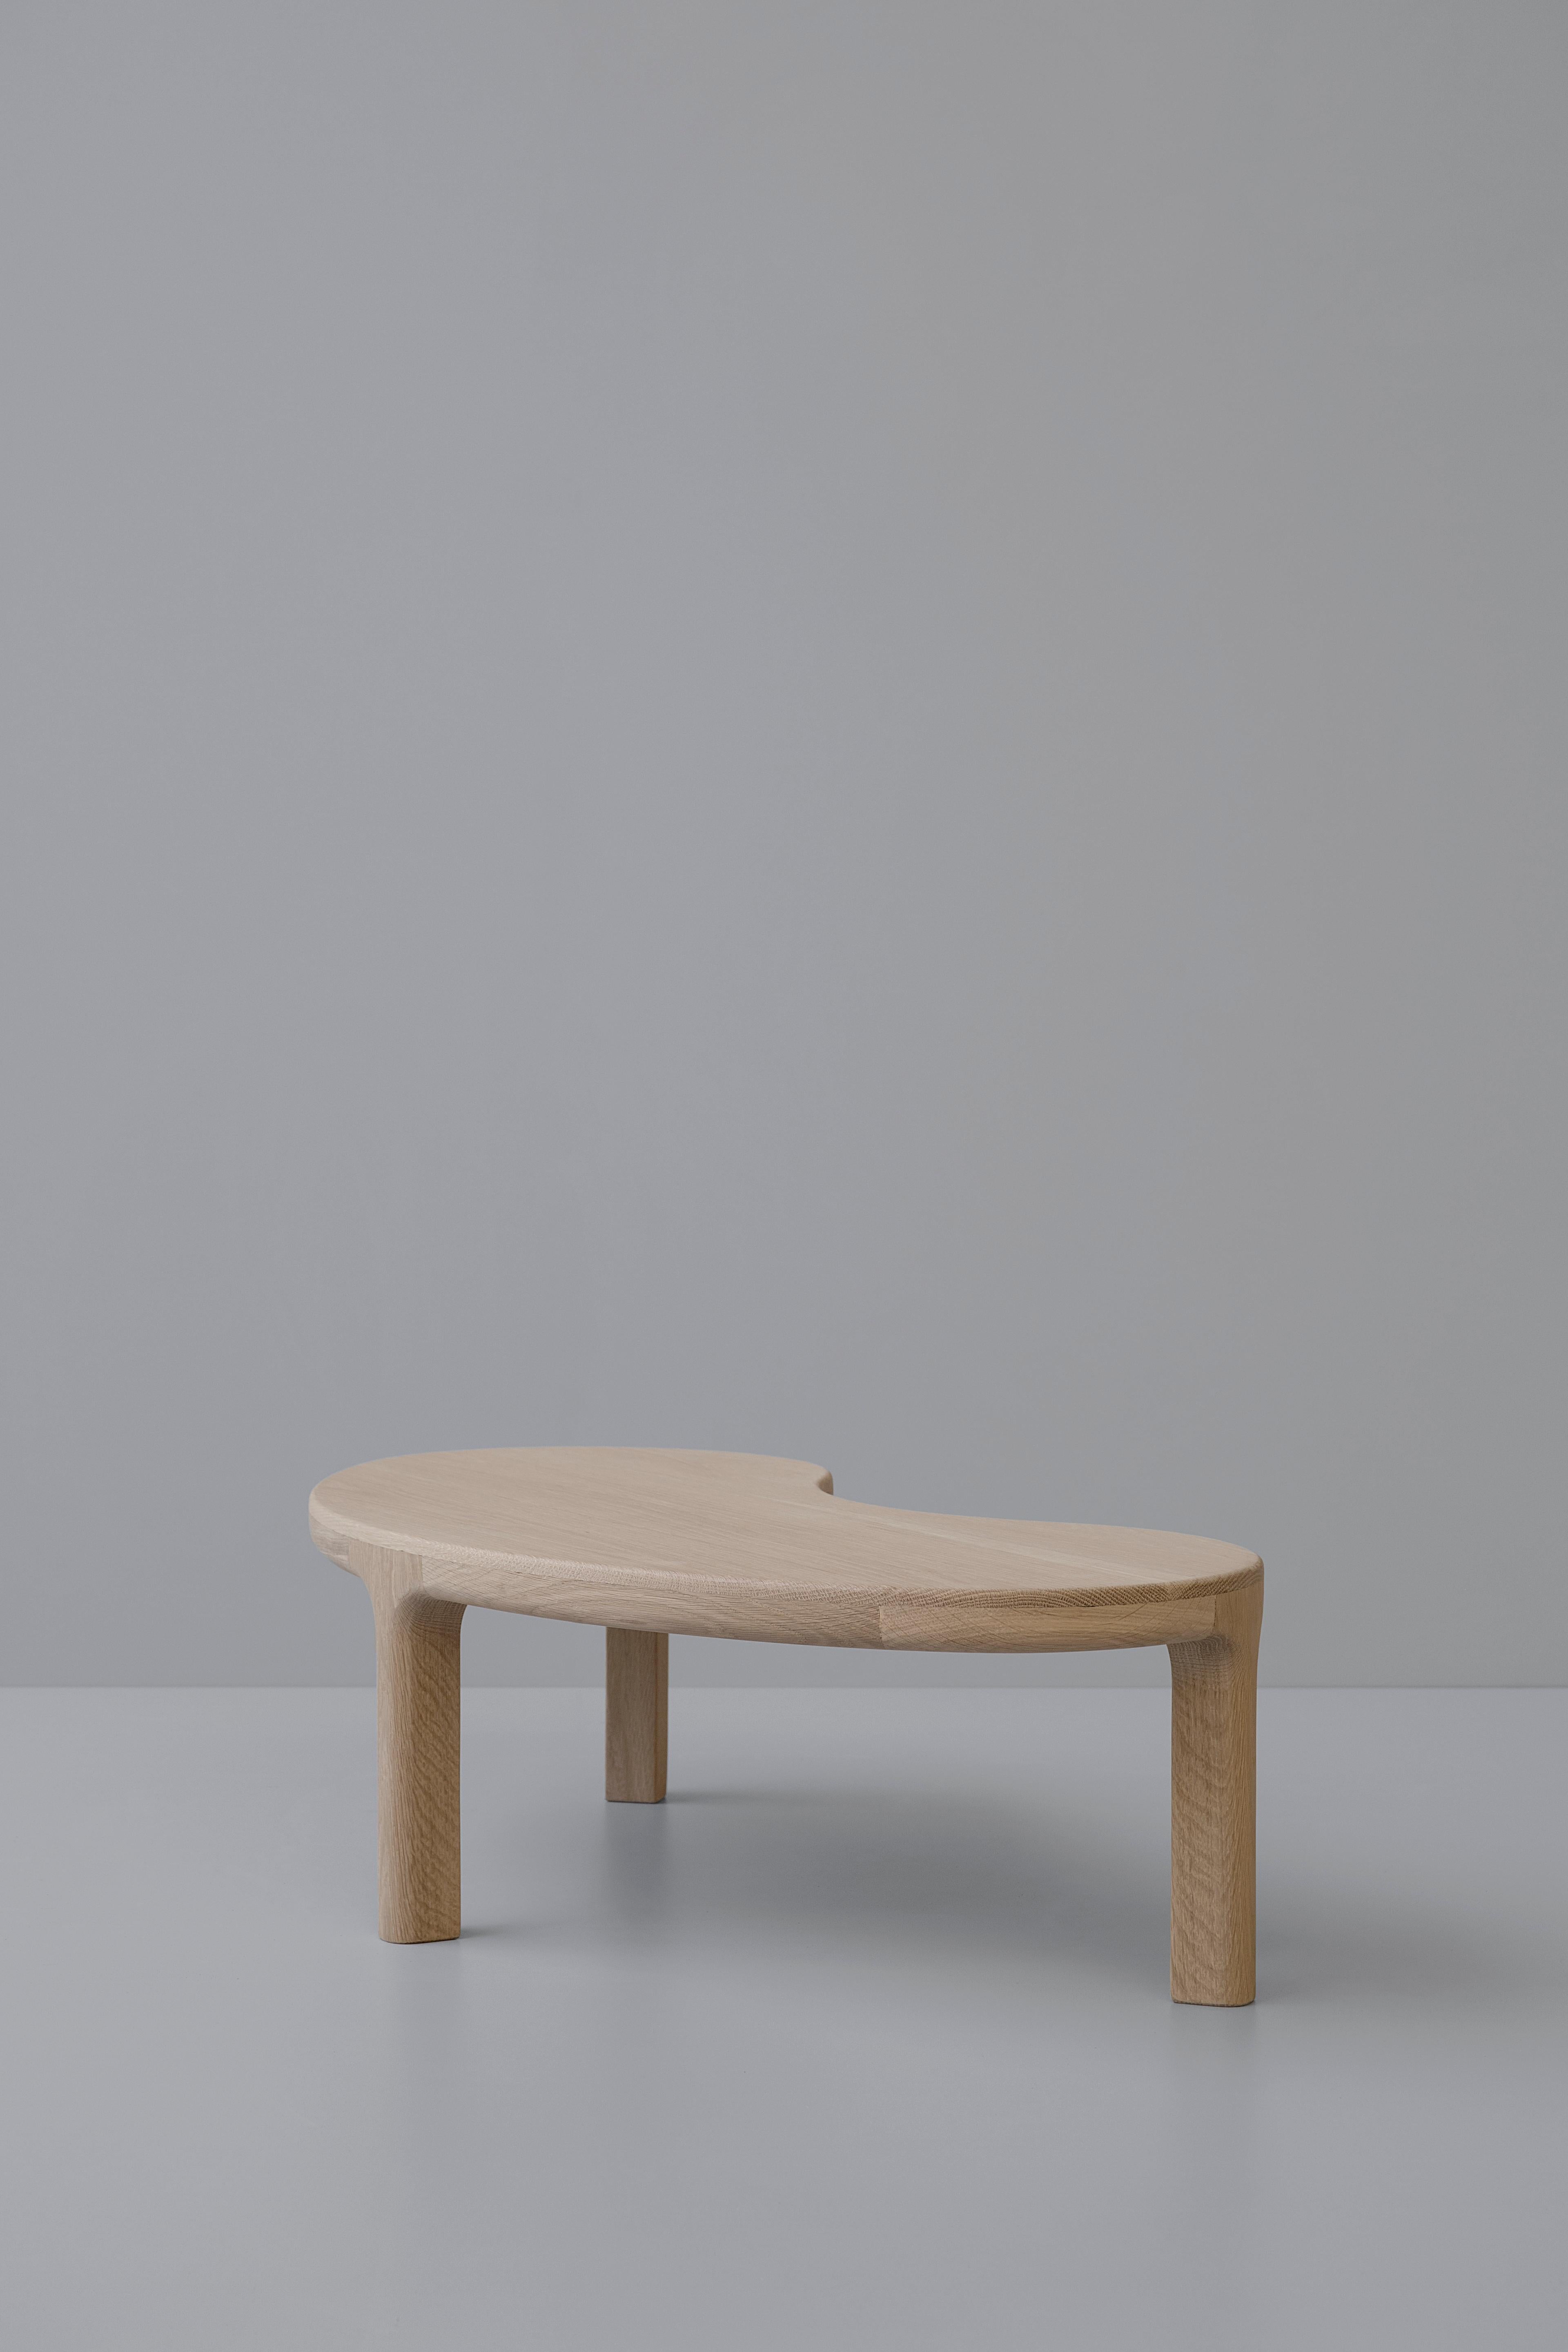 Trasiego Couchtisch von Arturo Verástegui
Abmessungen: T 100 x B 47 x H 27 cm
MATERIAL: Eichenholz.

Tisch aus weißer Natureiche.

Sebastián Angeles ist ein Industriedesigner aus Mexiko-Stadt, der 2017 seinen Abschluss an der Universität Anáhuac